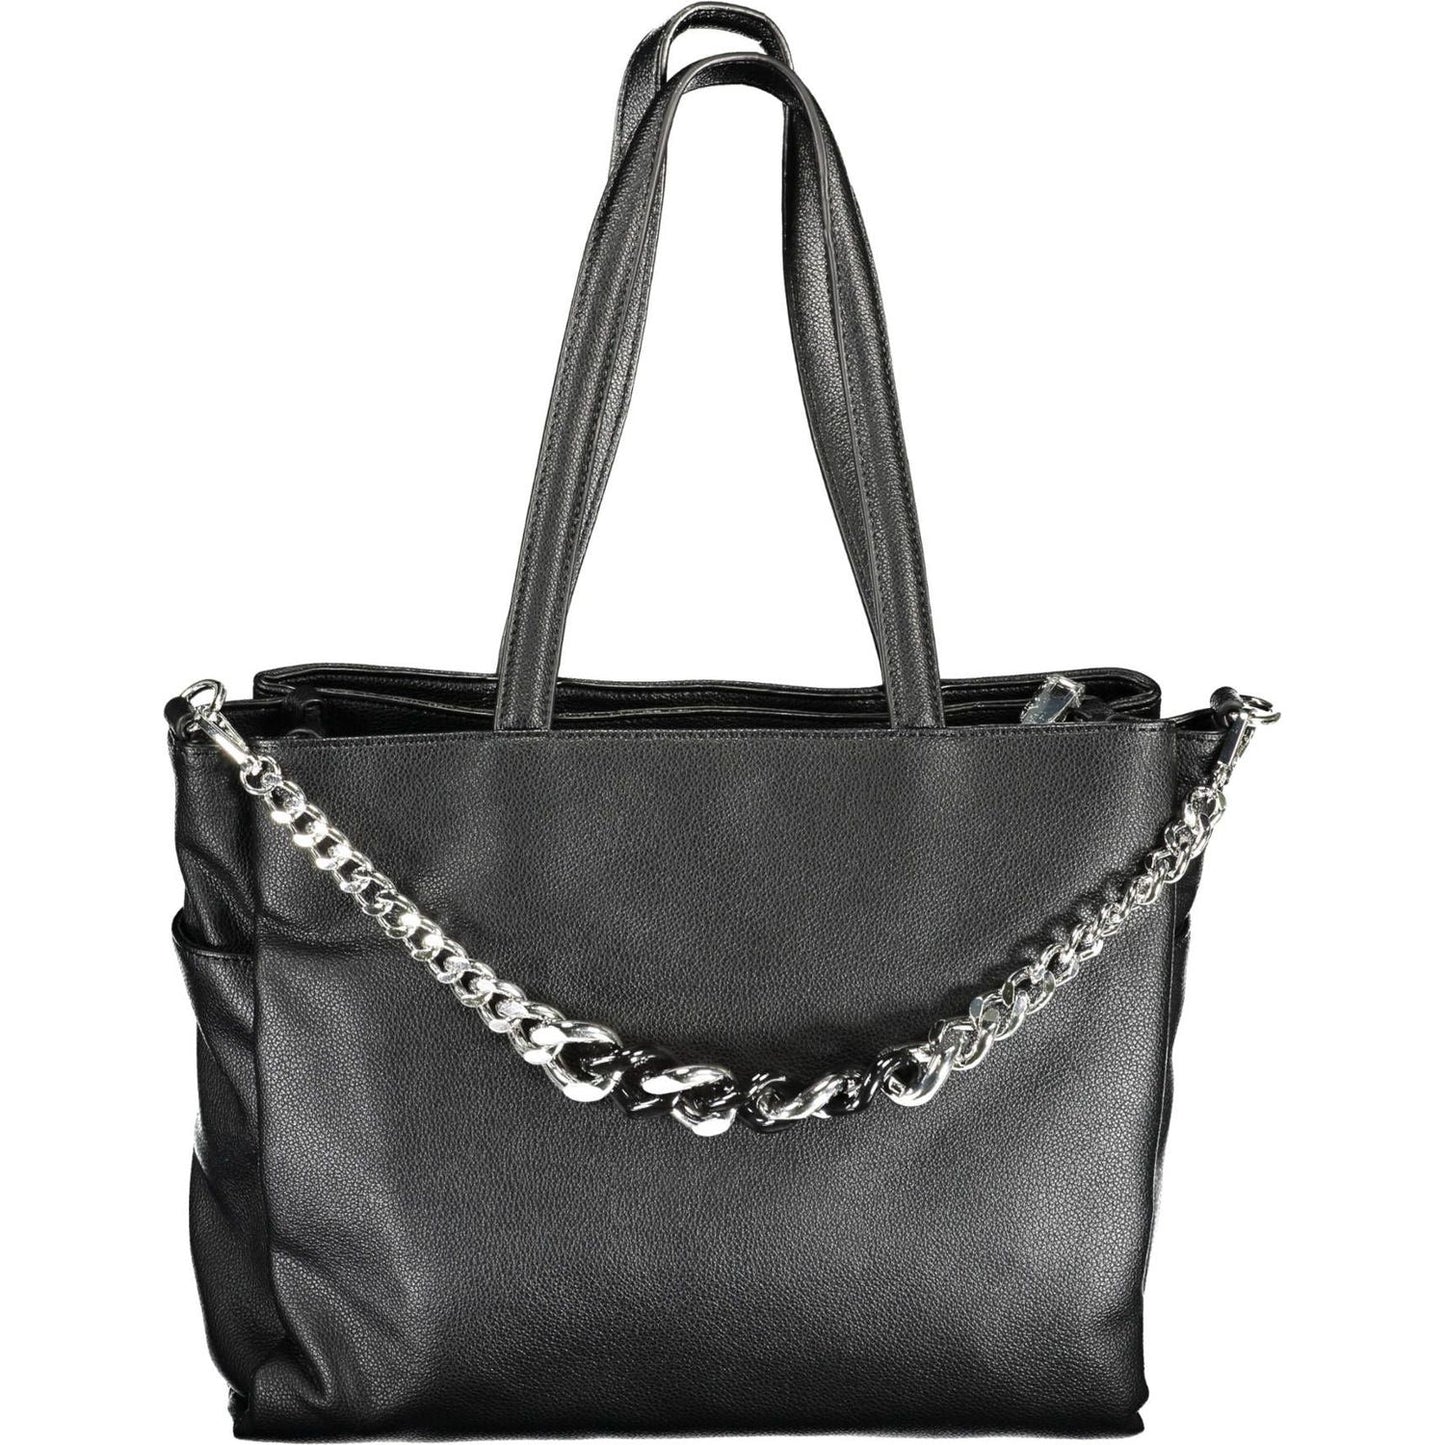 BYBLOS | Elegant Black Chain-Strap Handbag| McRichard Designer Brands   